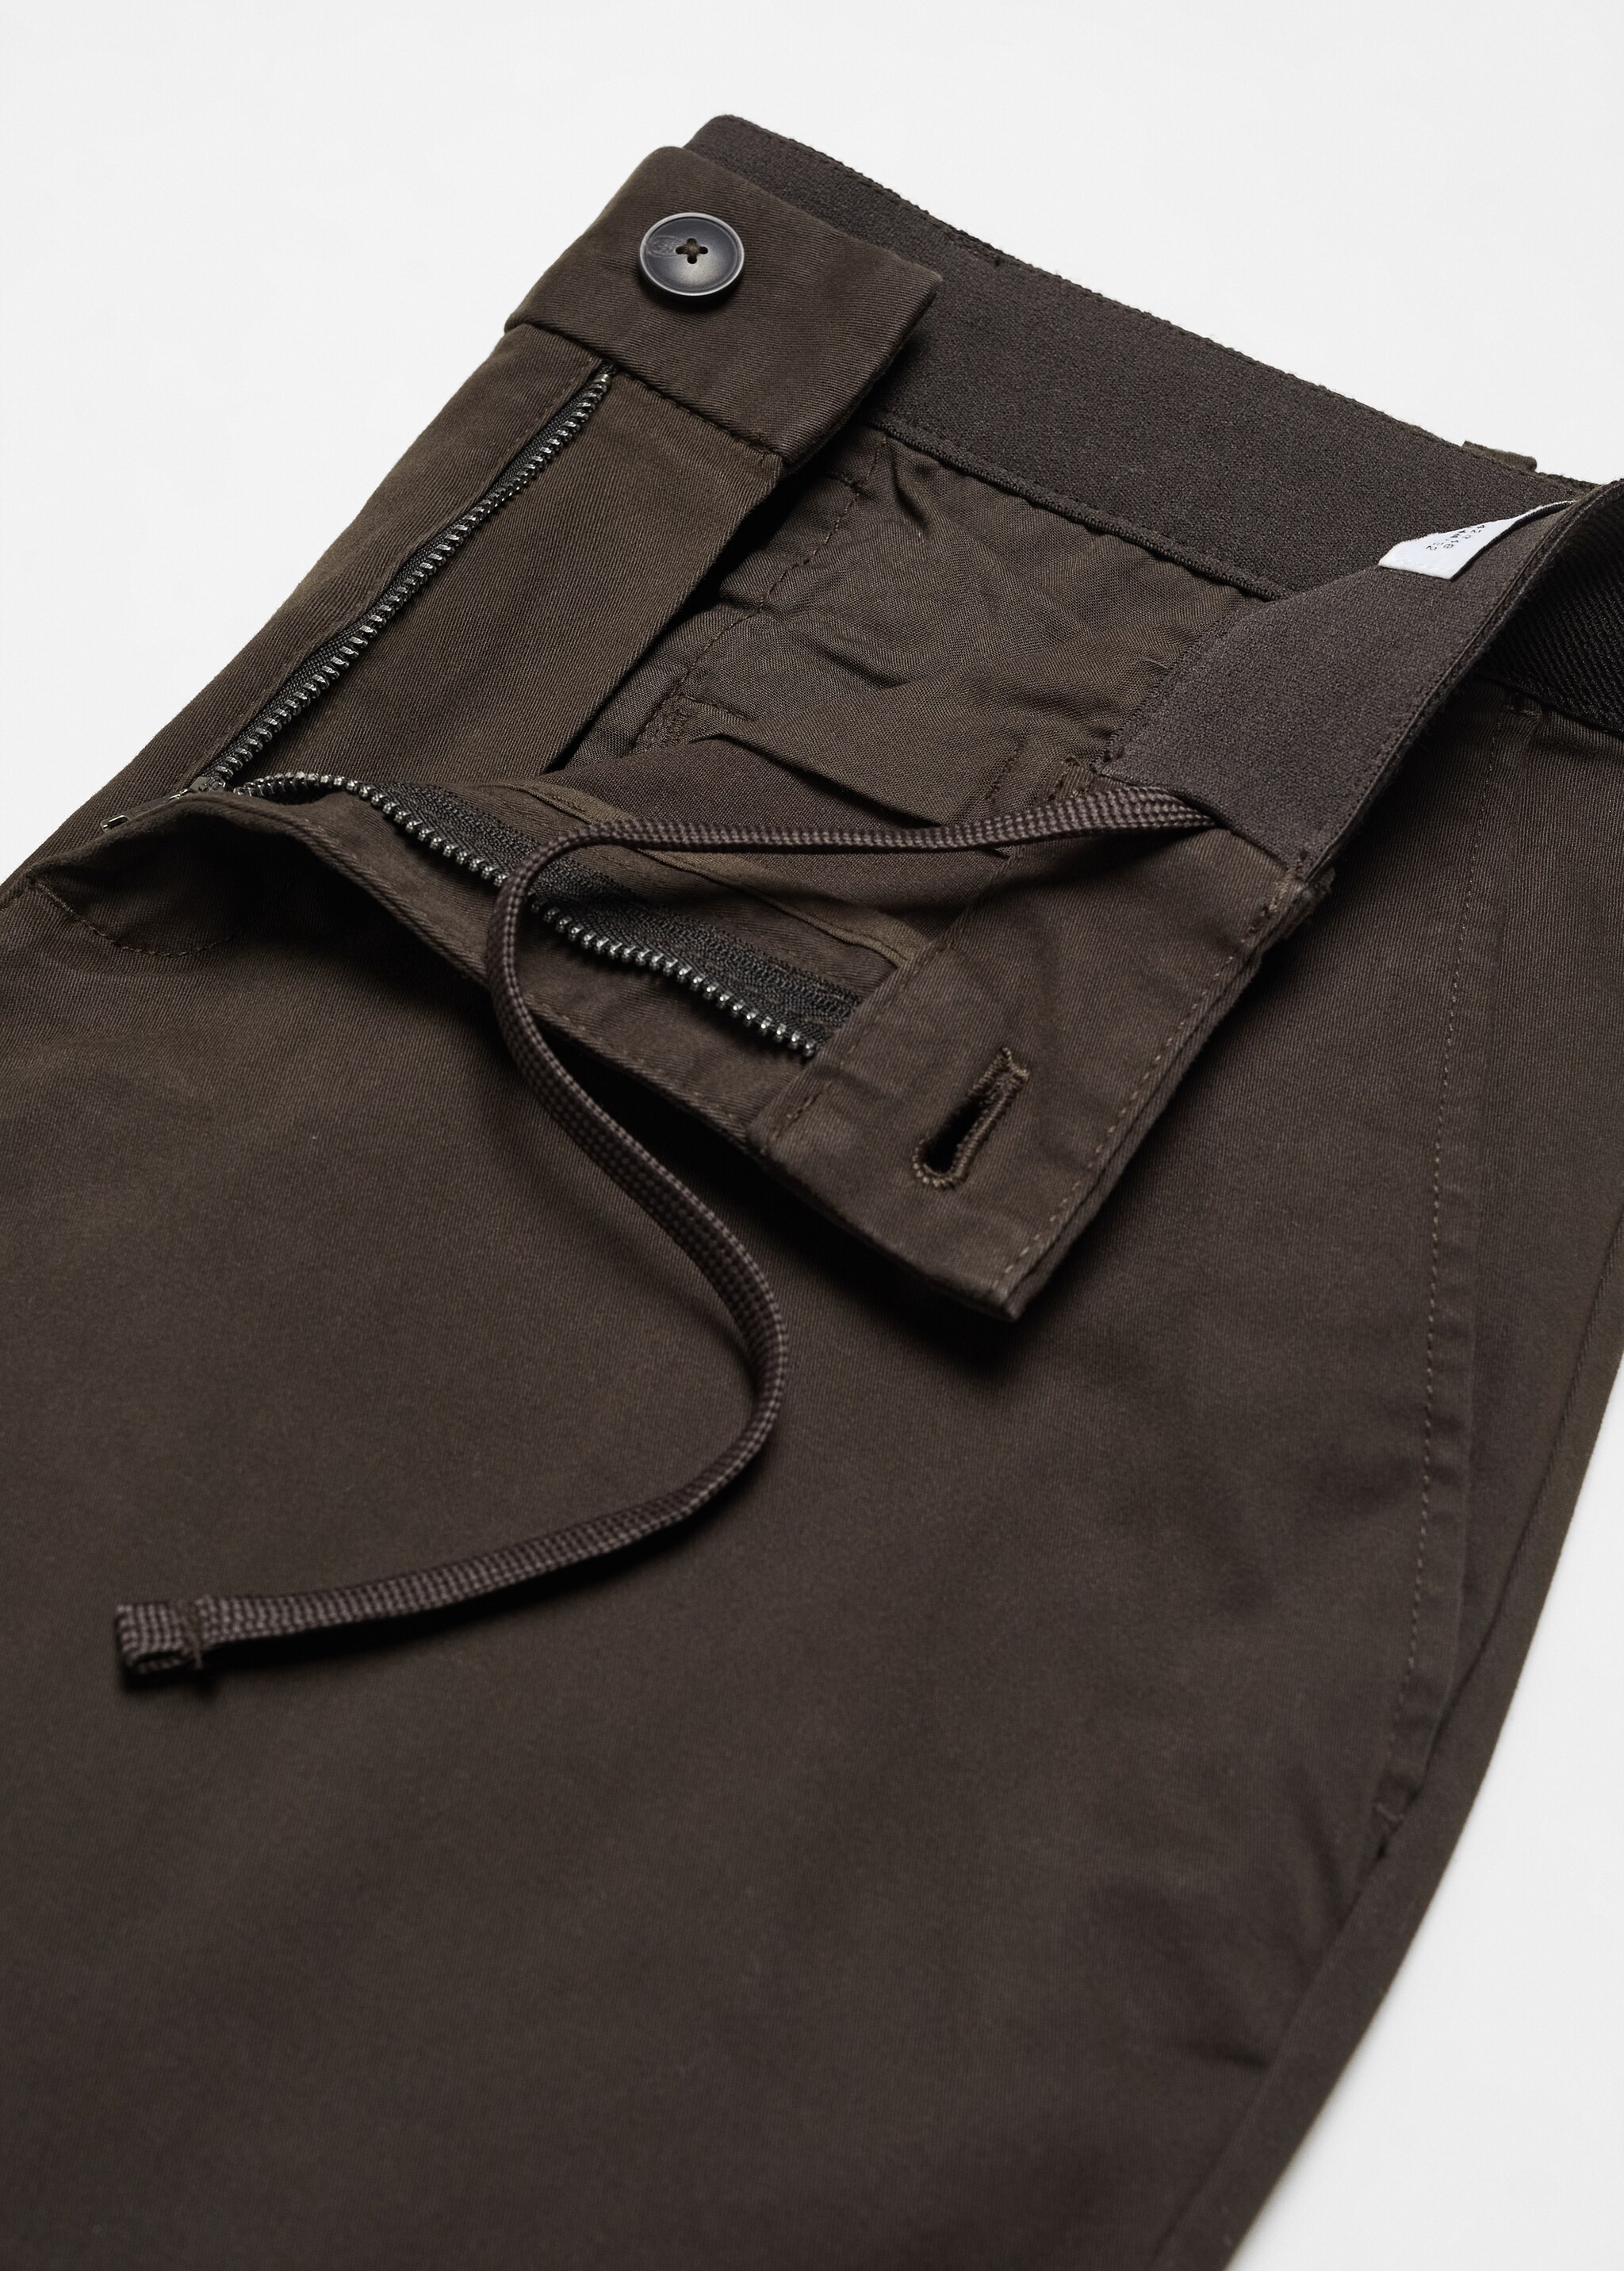 Spodnie bawełniane o fasonie tapered cropped - Szczegóły artykułu 8